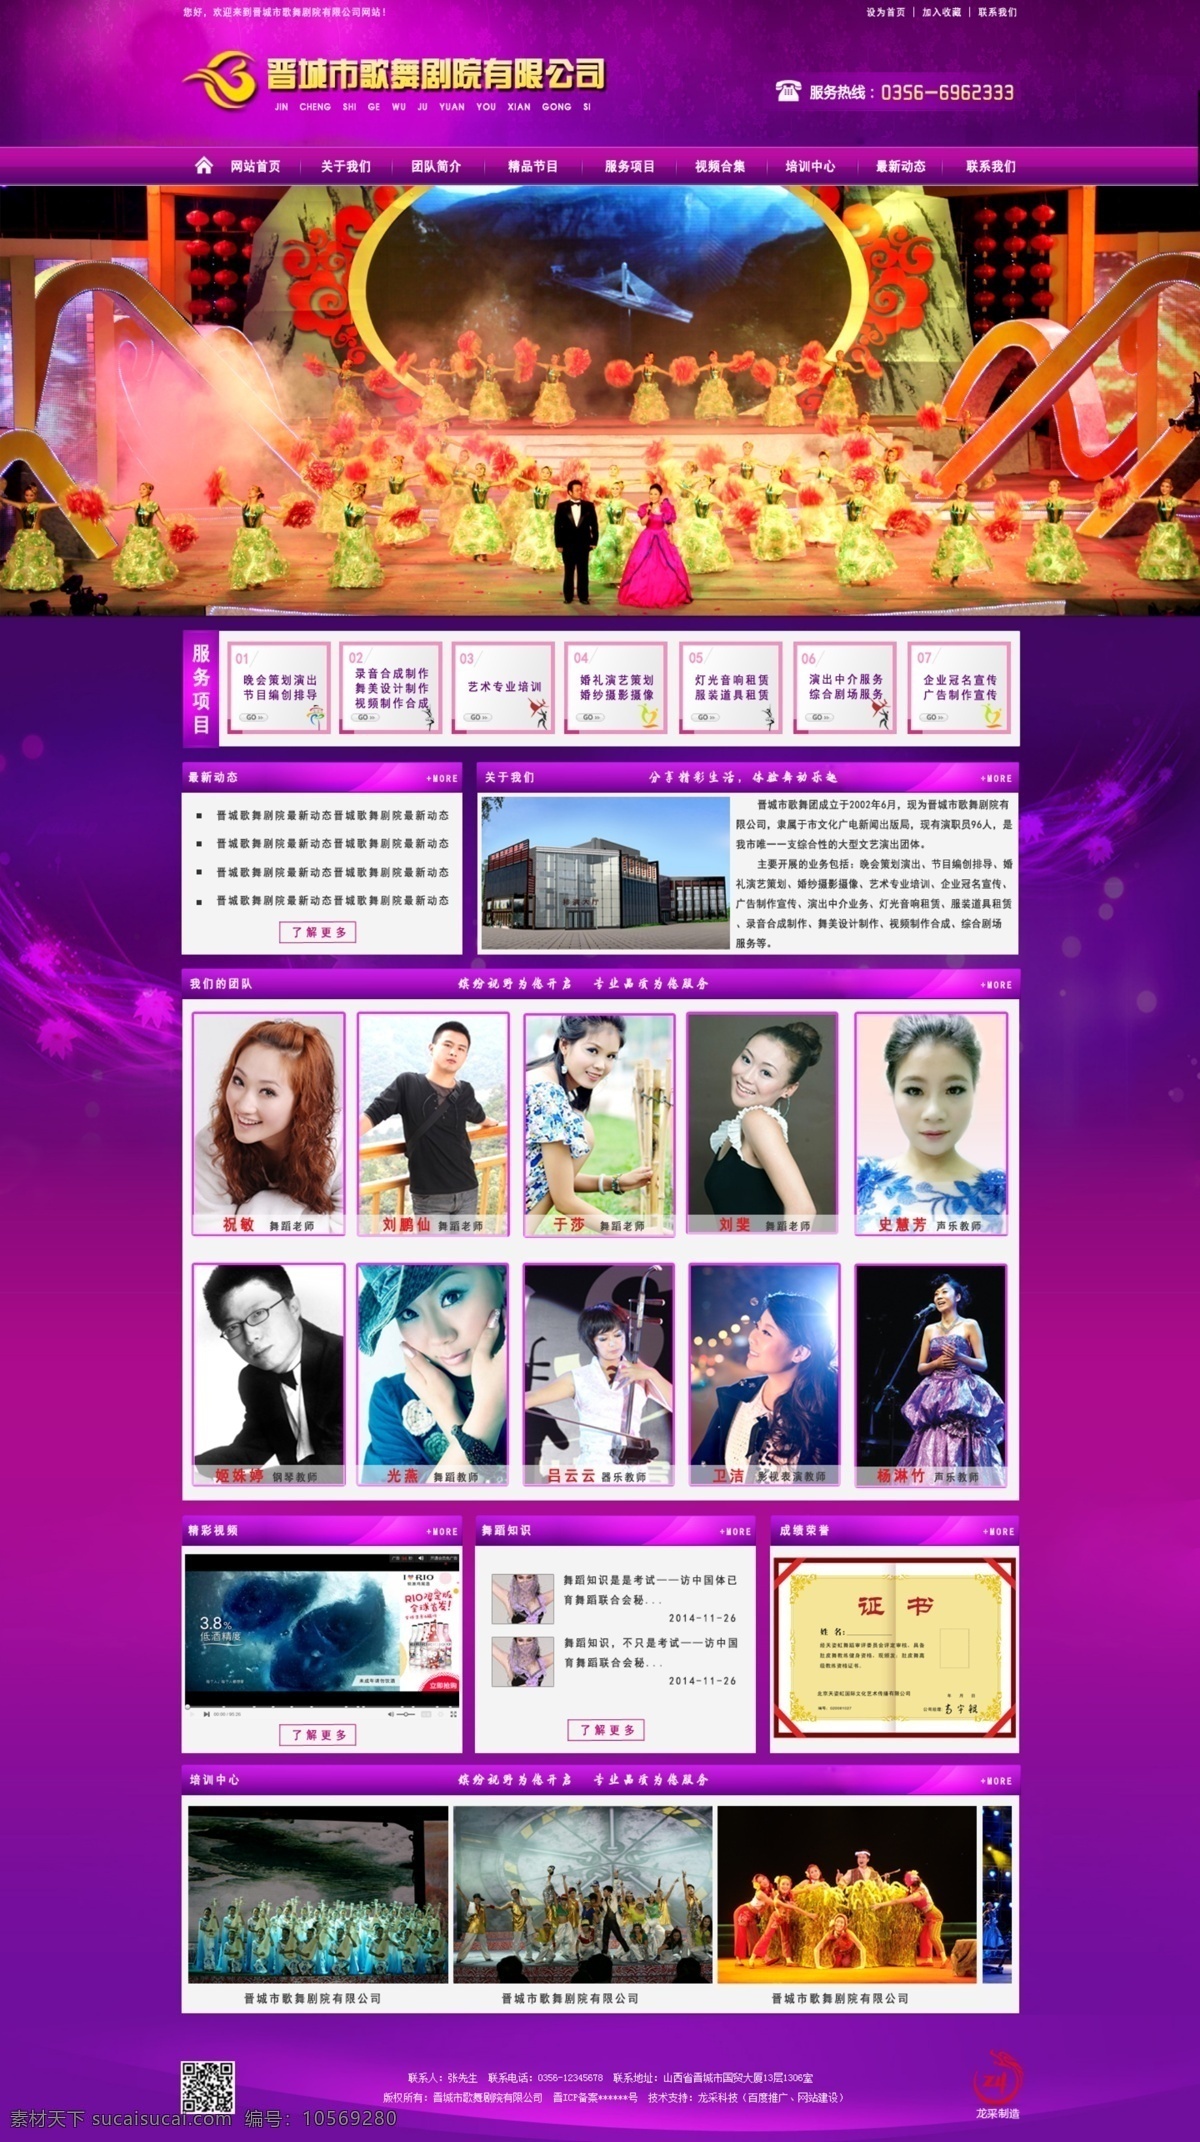 晋城市 歌舞 剧院 有限公司 歌舞剧院网站 紫色网站